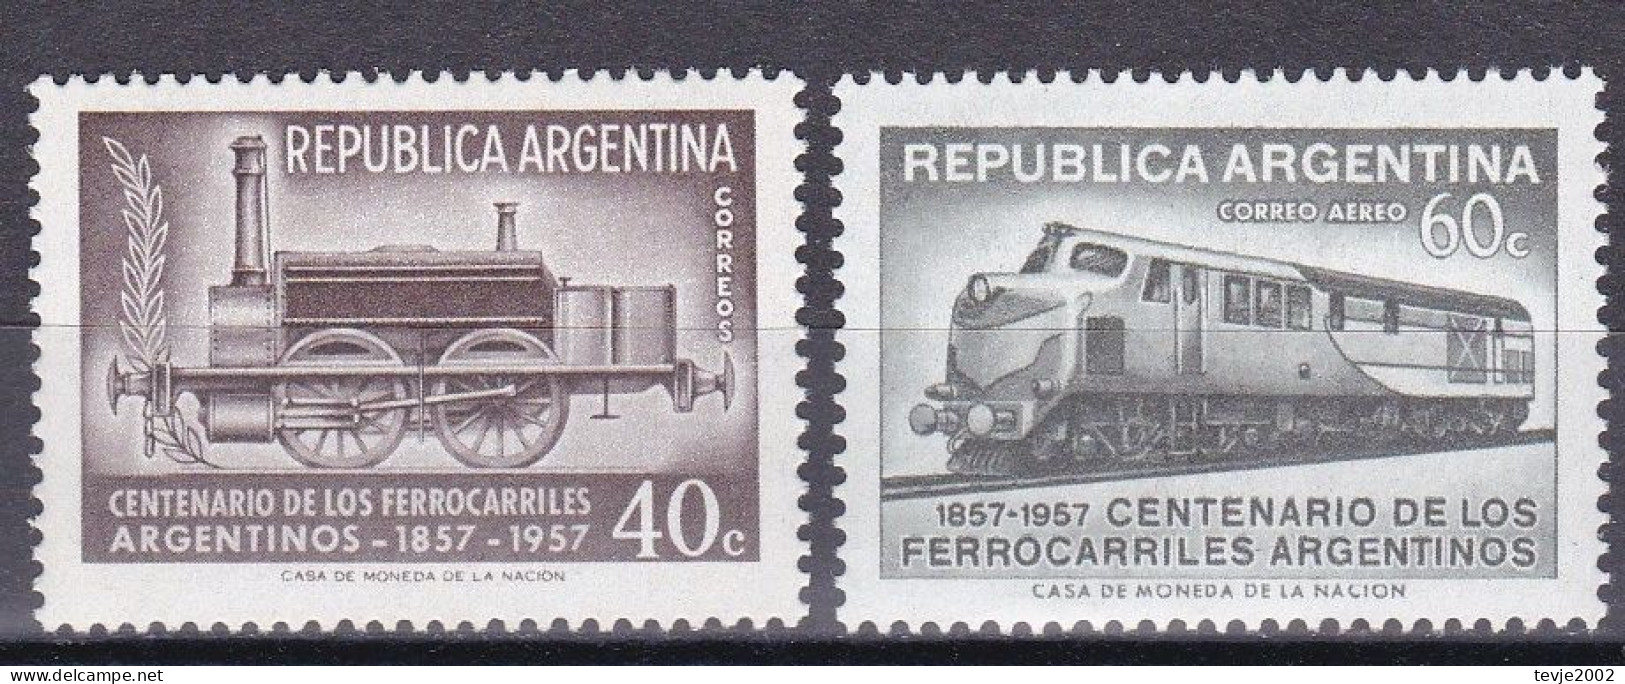 Argentinien Argentina 1957 - Mi.Nr. 659 - 660 - Postfrisch MNH - Eisenbahnen Railways - Eisenbahnen